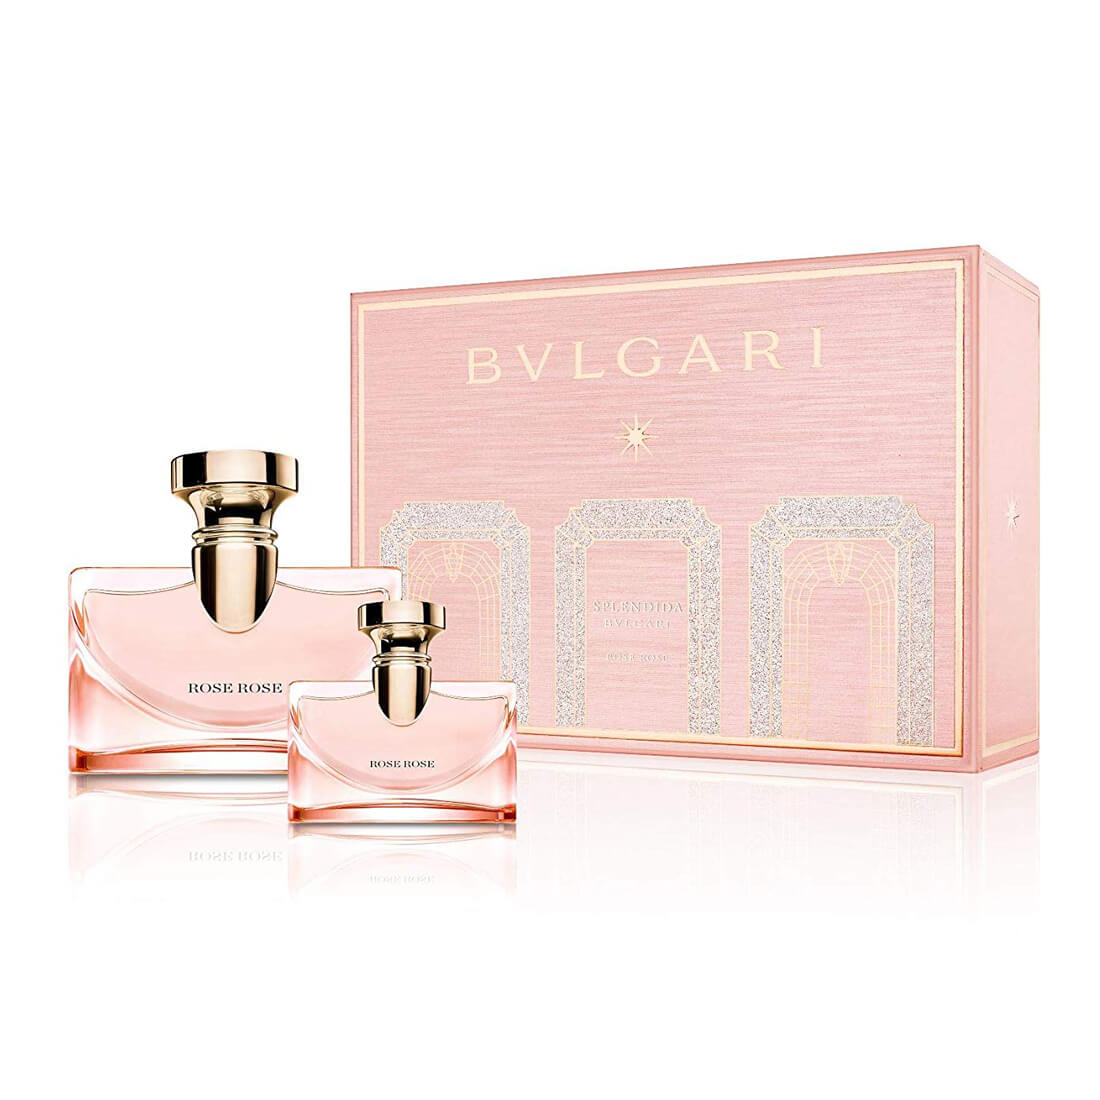 bvlgari perfume pack